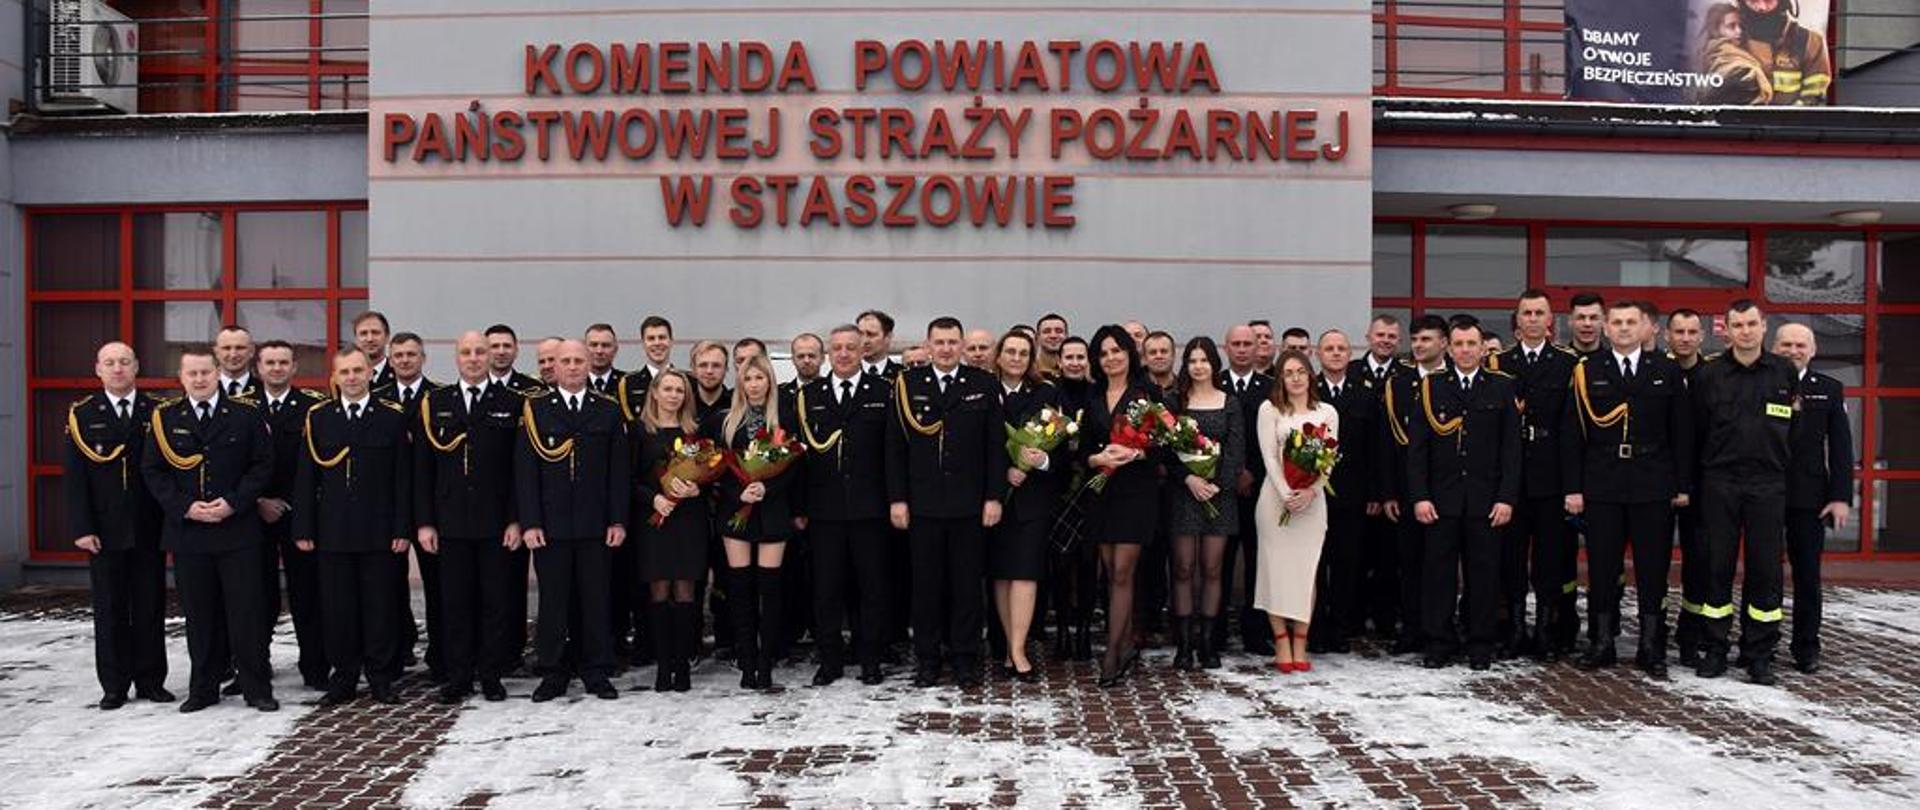 19 stycznia 2024 roku w Komendzie Powiatowej Państwowej Straży Pożarnej w Staszowie odbył się uroczysty apel z okazji zakończenia służby i przejścia na zaopatrzenie emerytalne funkcjonariusza st. asp. Roberta Drzazgi